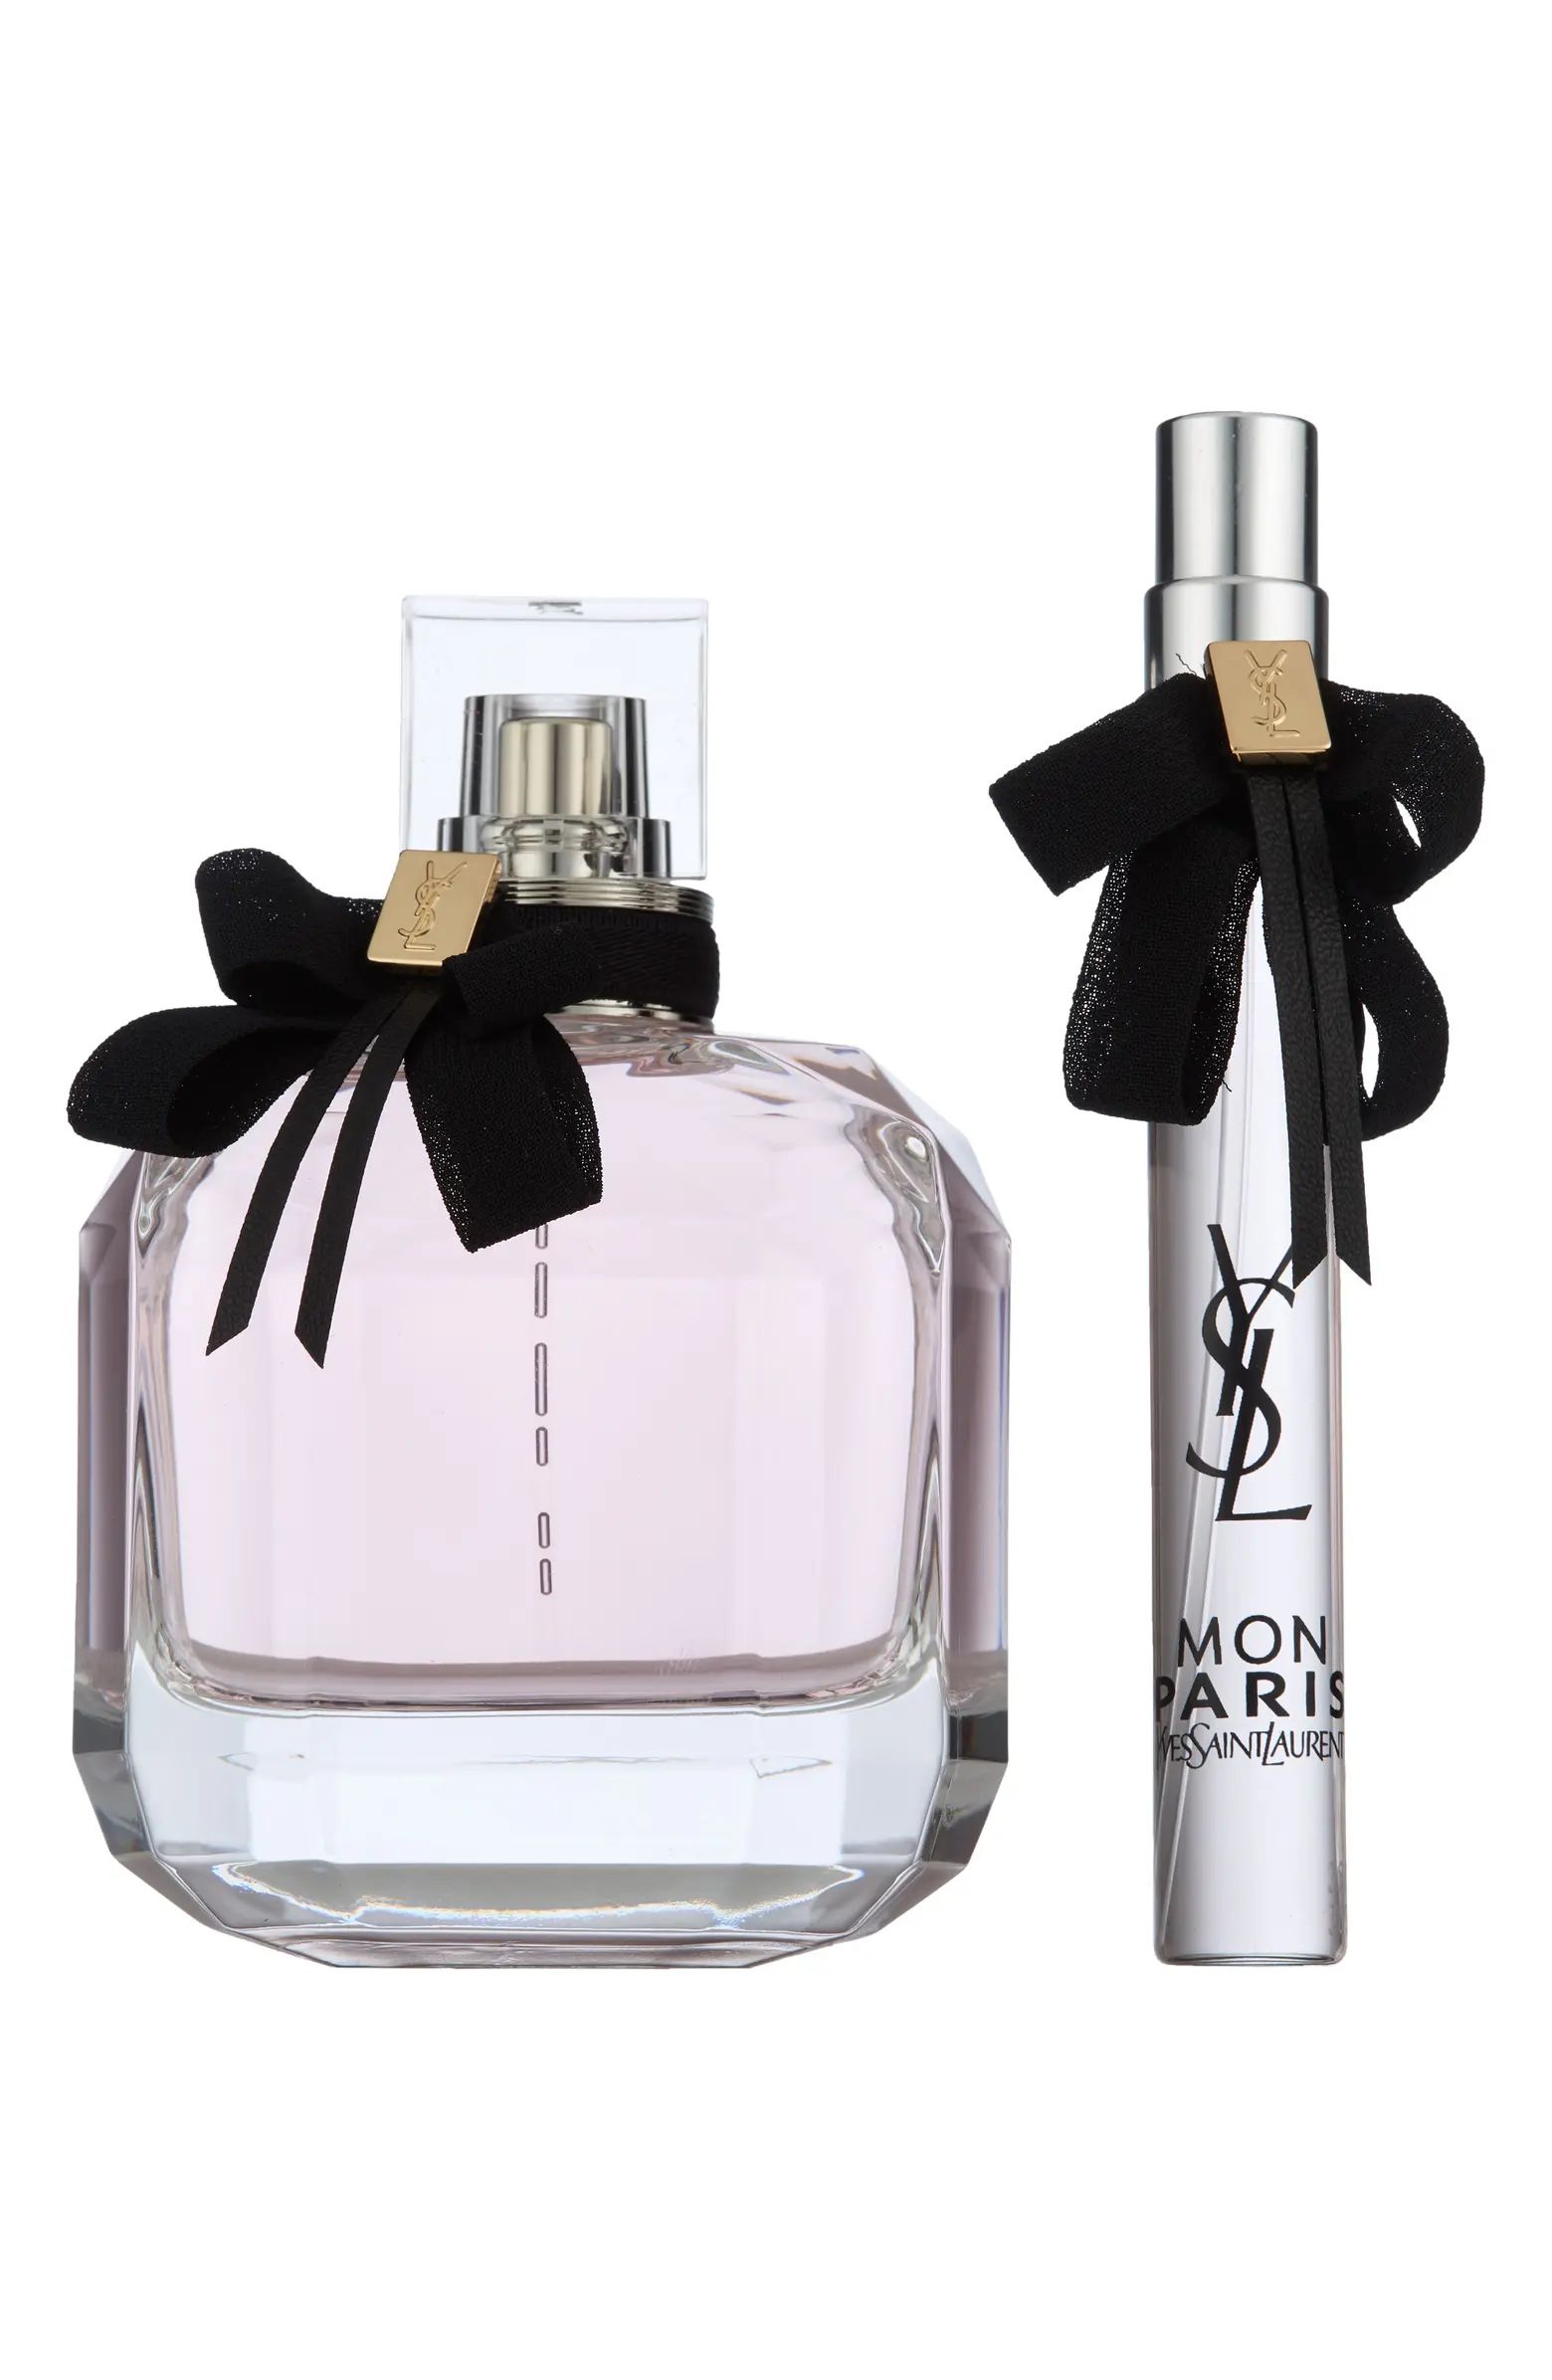 Mon Paris Eau de Parfum Set $160 Value | Nordstrom